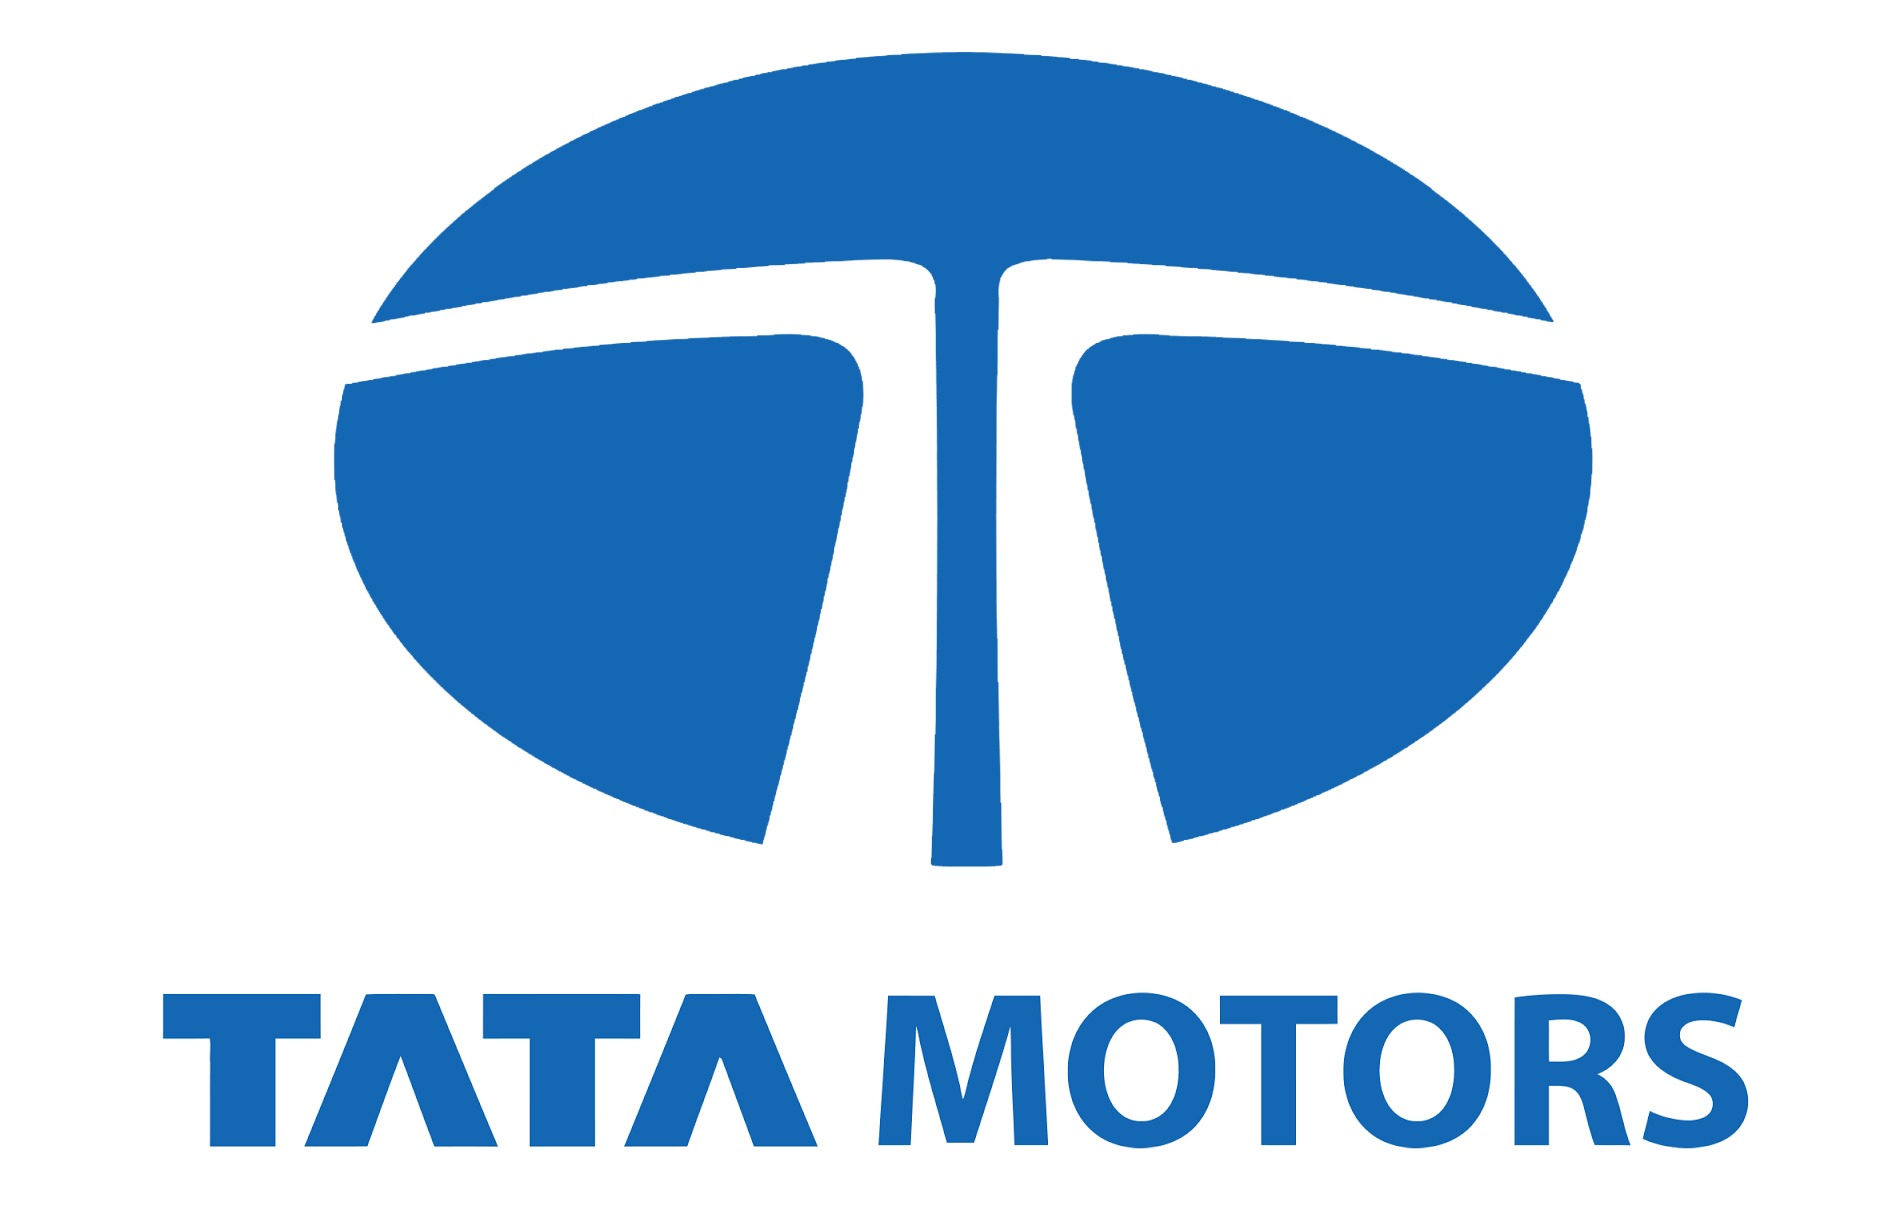 Tata Motors Cars Showroom - Commercial Automobiles - Logo